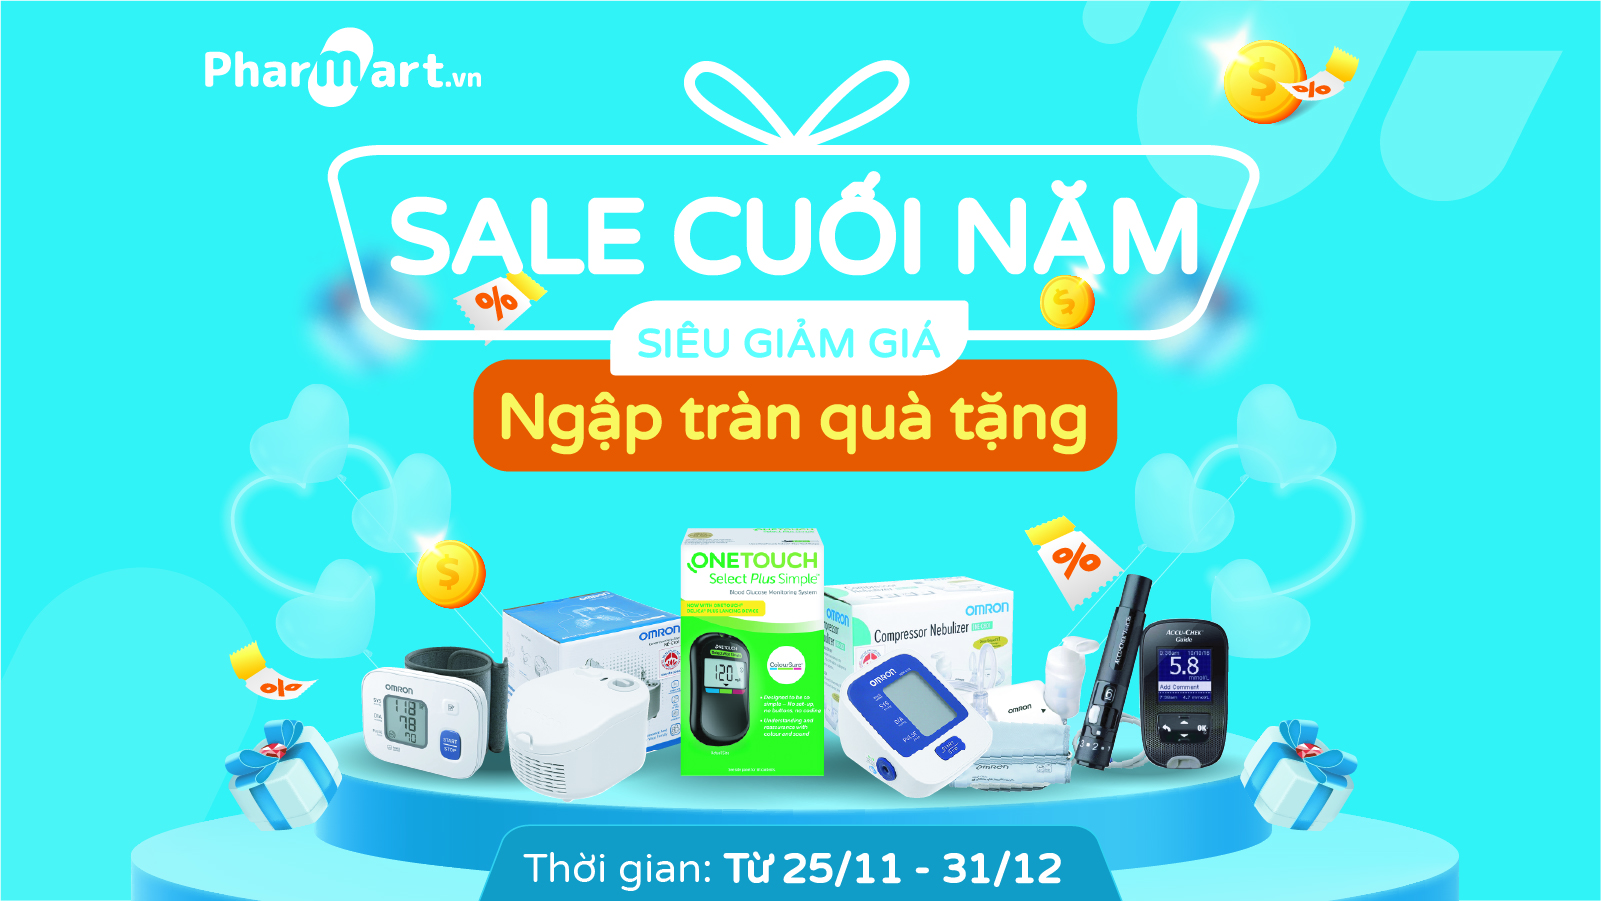 Sale lớn cuối năm “Siêu giảm giá, ngập tràn quà tặng” chỉ có duy nhất tại Pharmart.vn